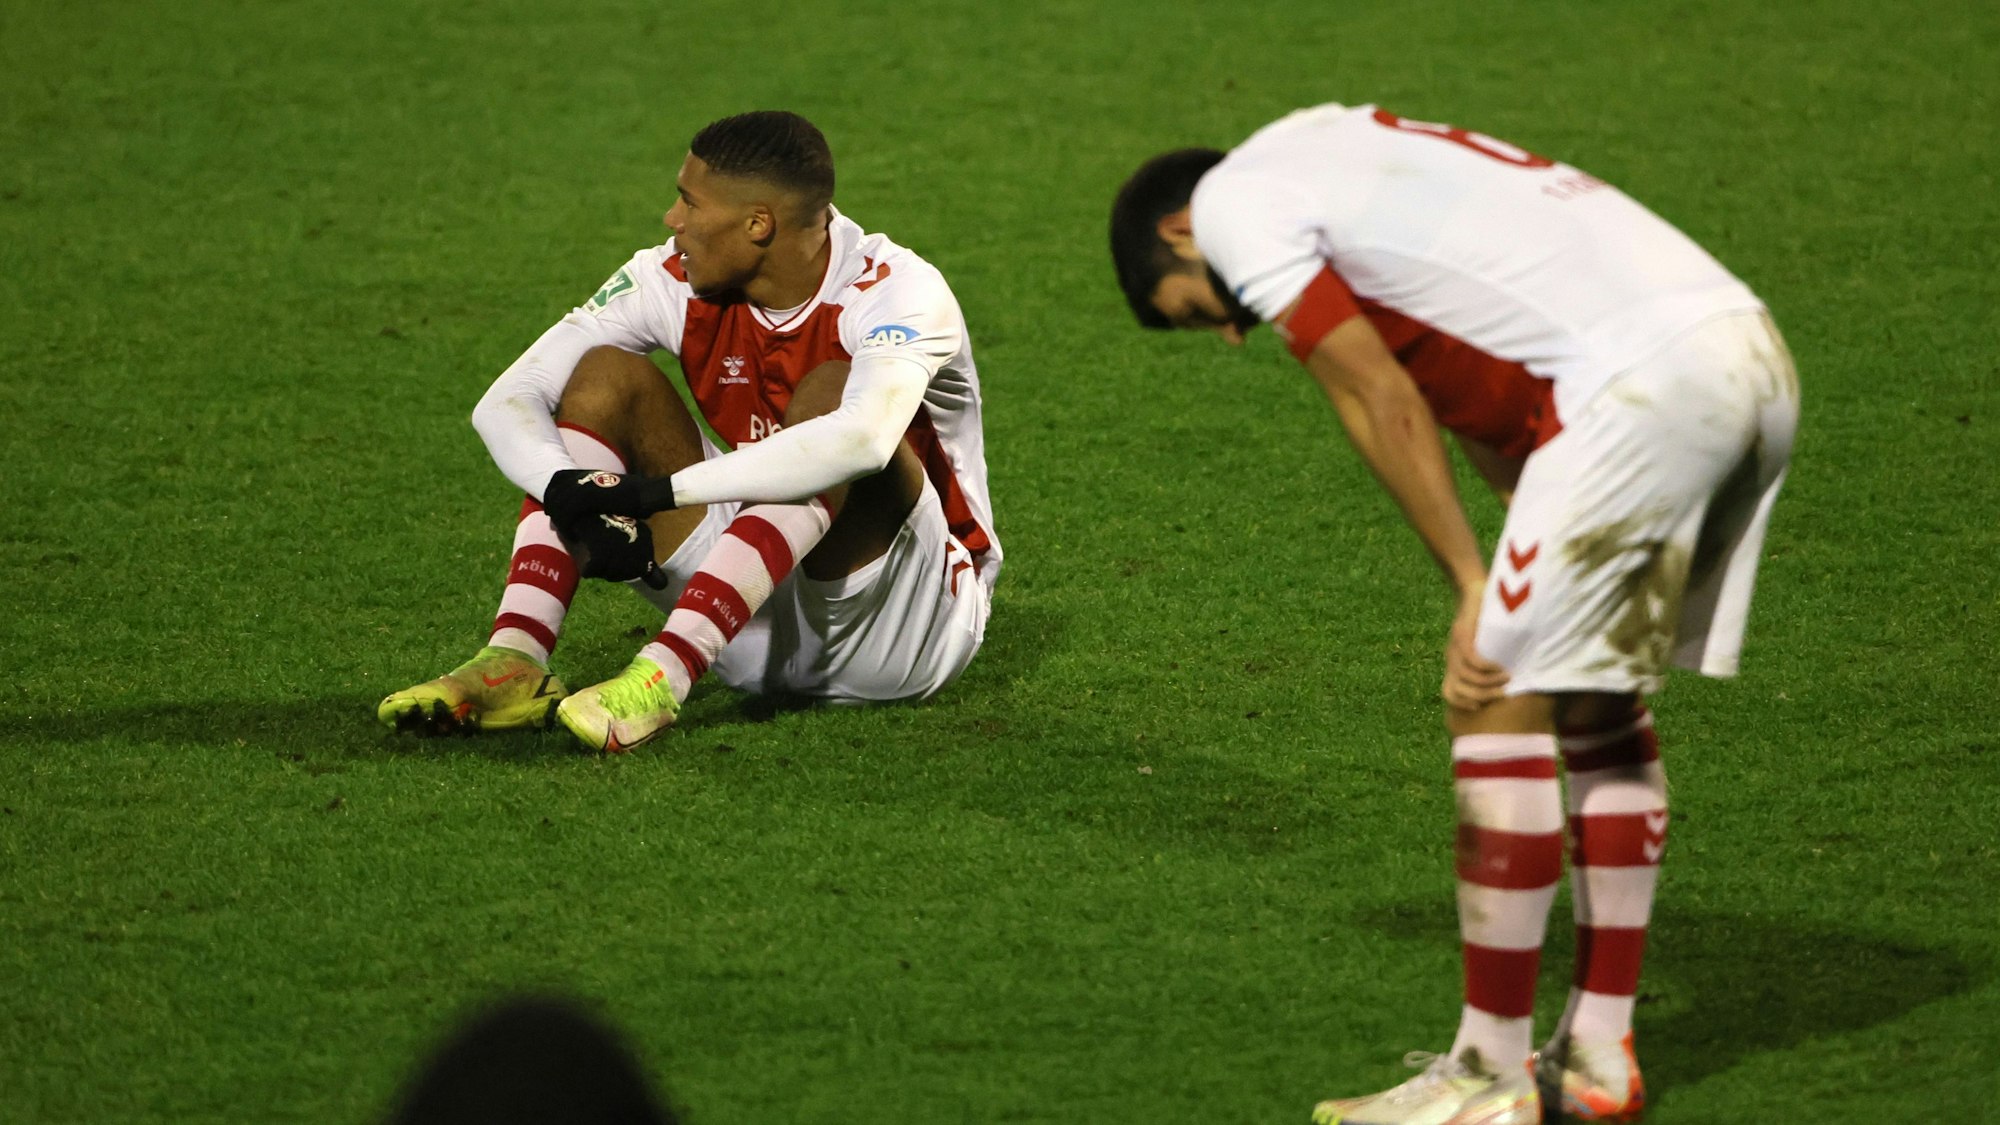 Ein Fußballspieler sitzt nach einer Niederlage enttäuscht auf dem Rasen, ein anderer stützt die Hände auf die Knie.